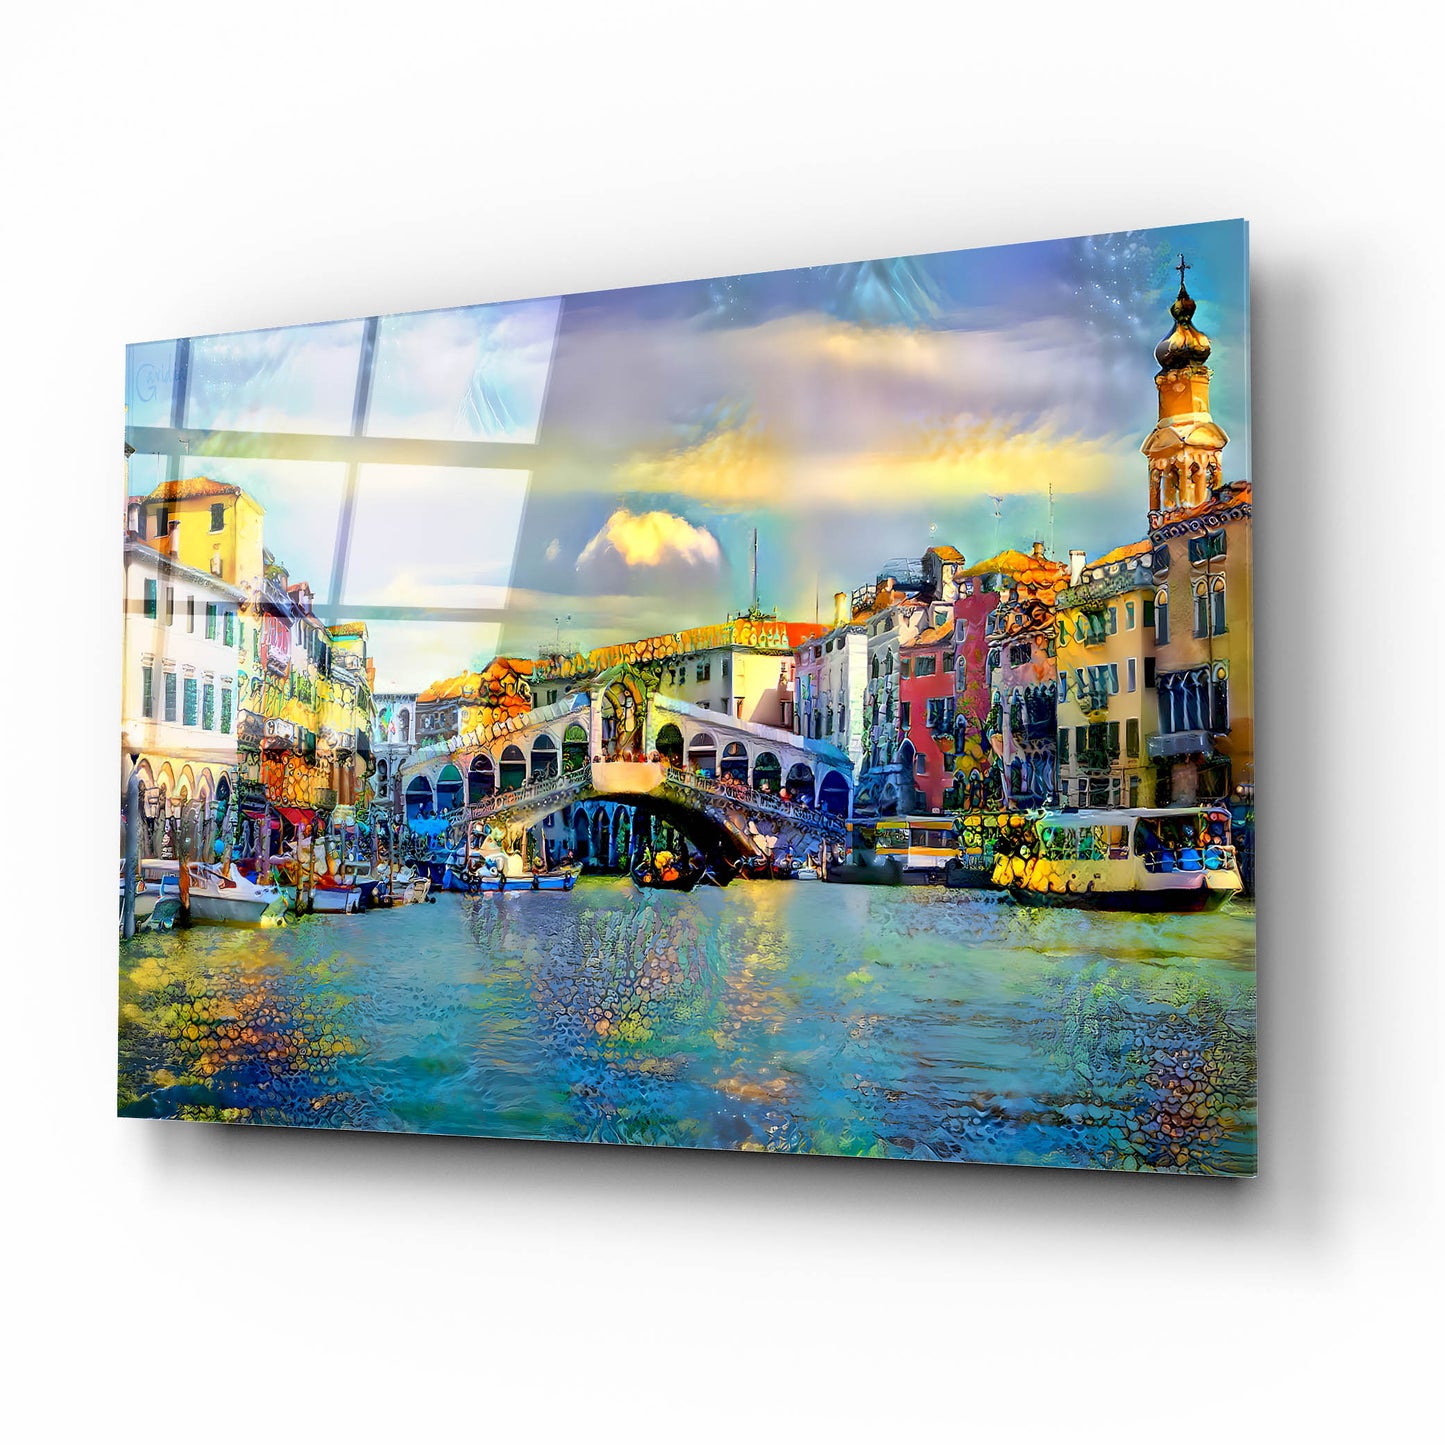 Epic Art 'Venice Italy Rialto Bridge' by Pedro Gavidia, Acrylic Glass Wall Art,16x12